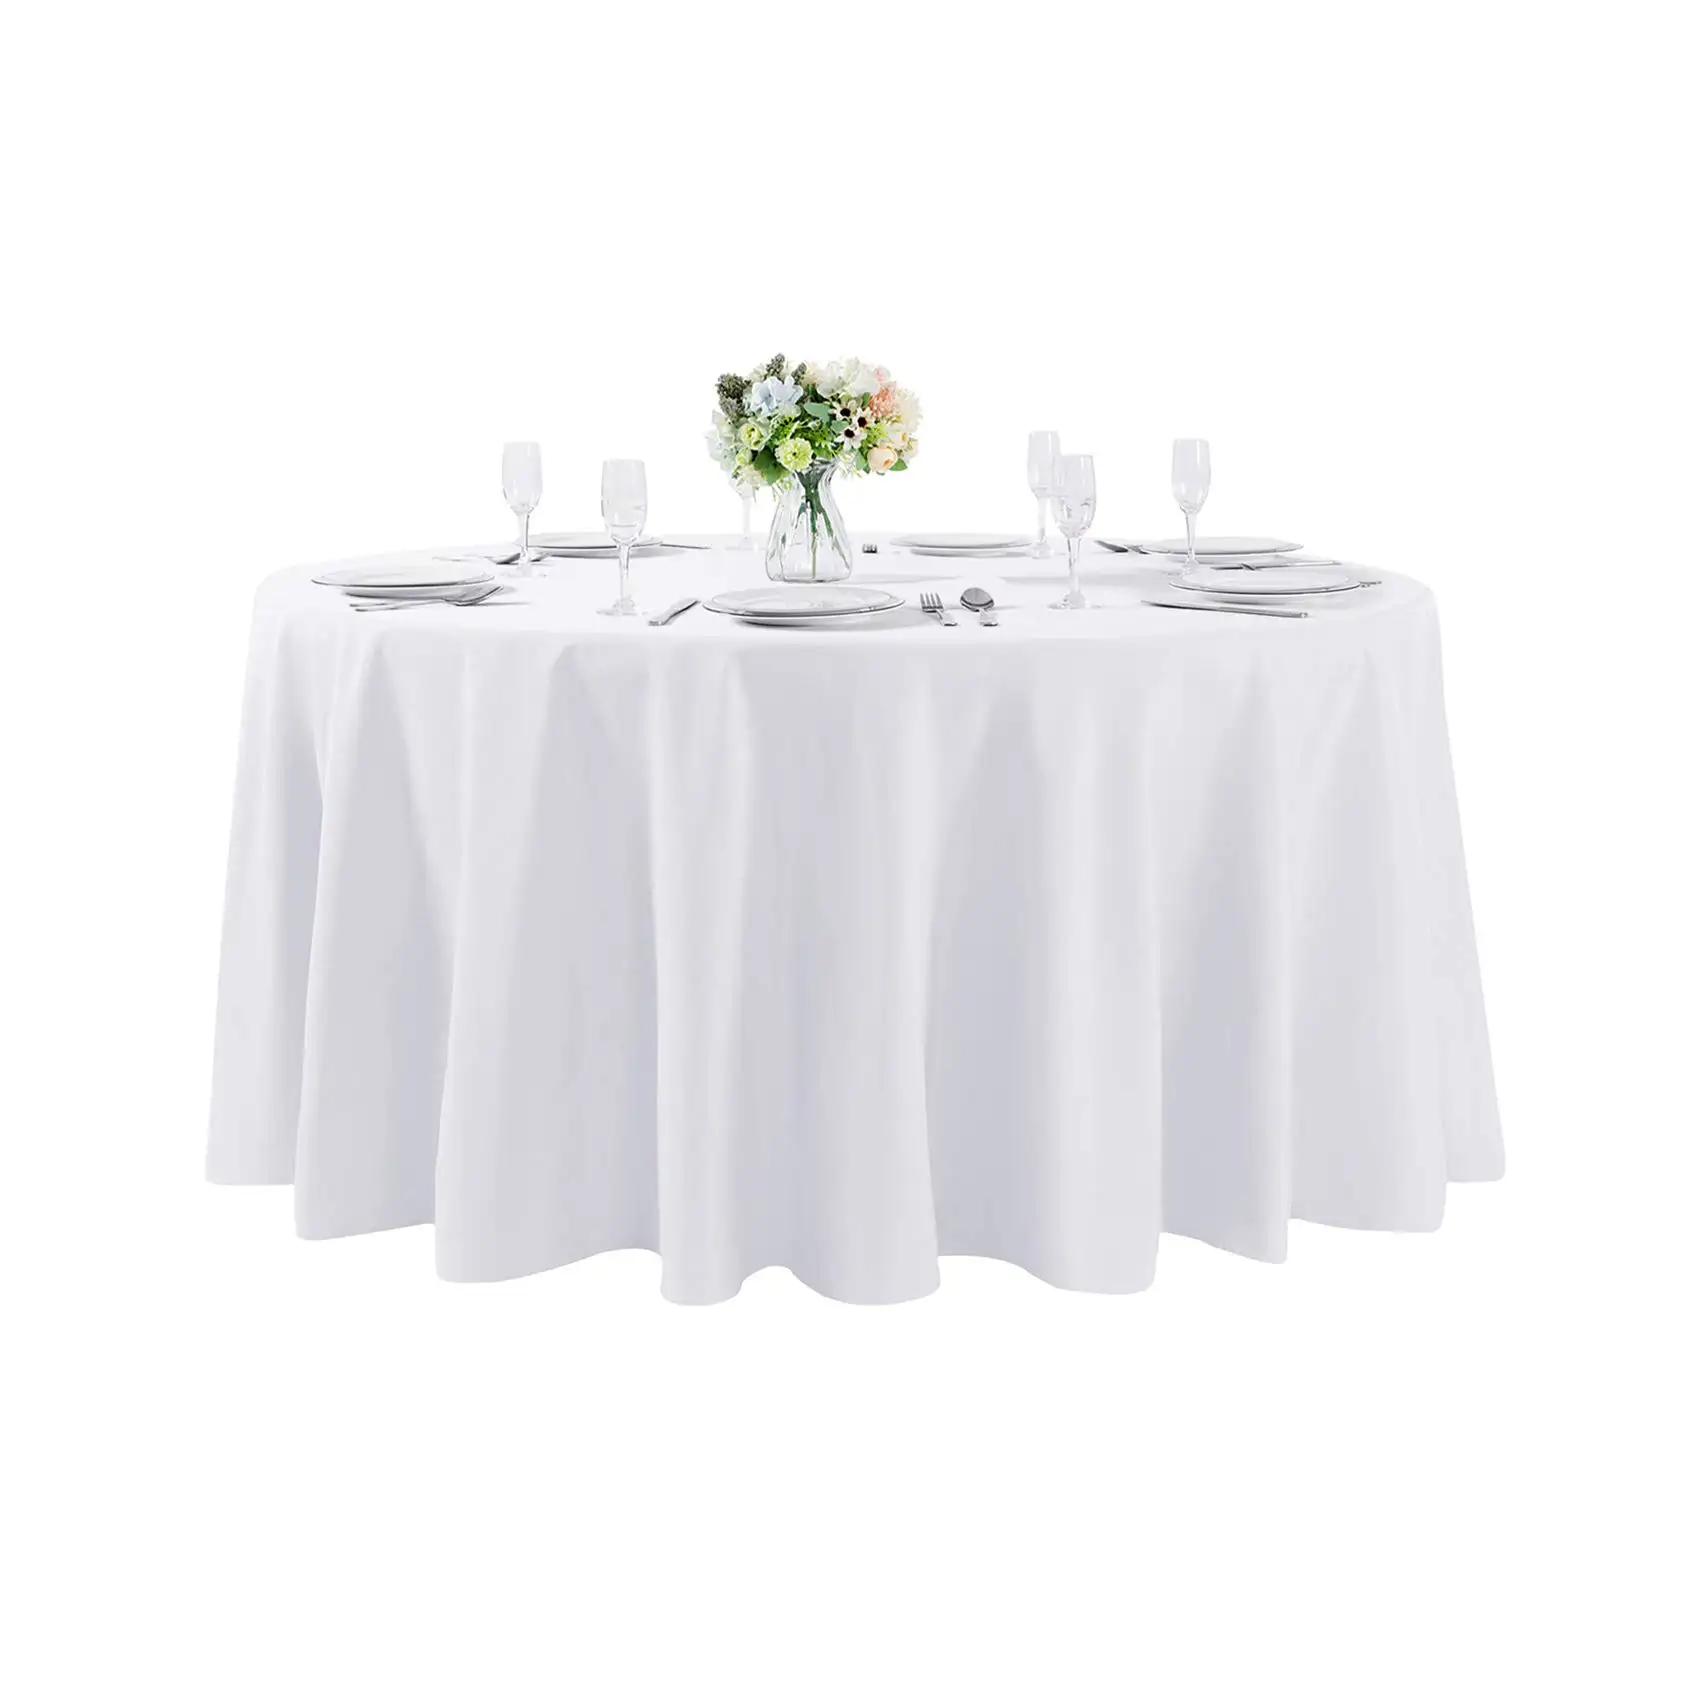 ผ้าปูโต๊ะโพลีเอสเตอร์ทรงกลมขนาดใหญ่สำหรับงานแต่งงานสำหรับงานเลี้ยง